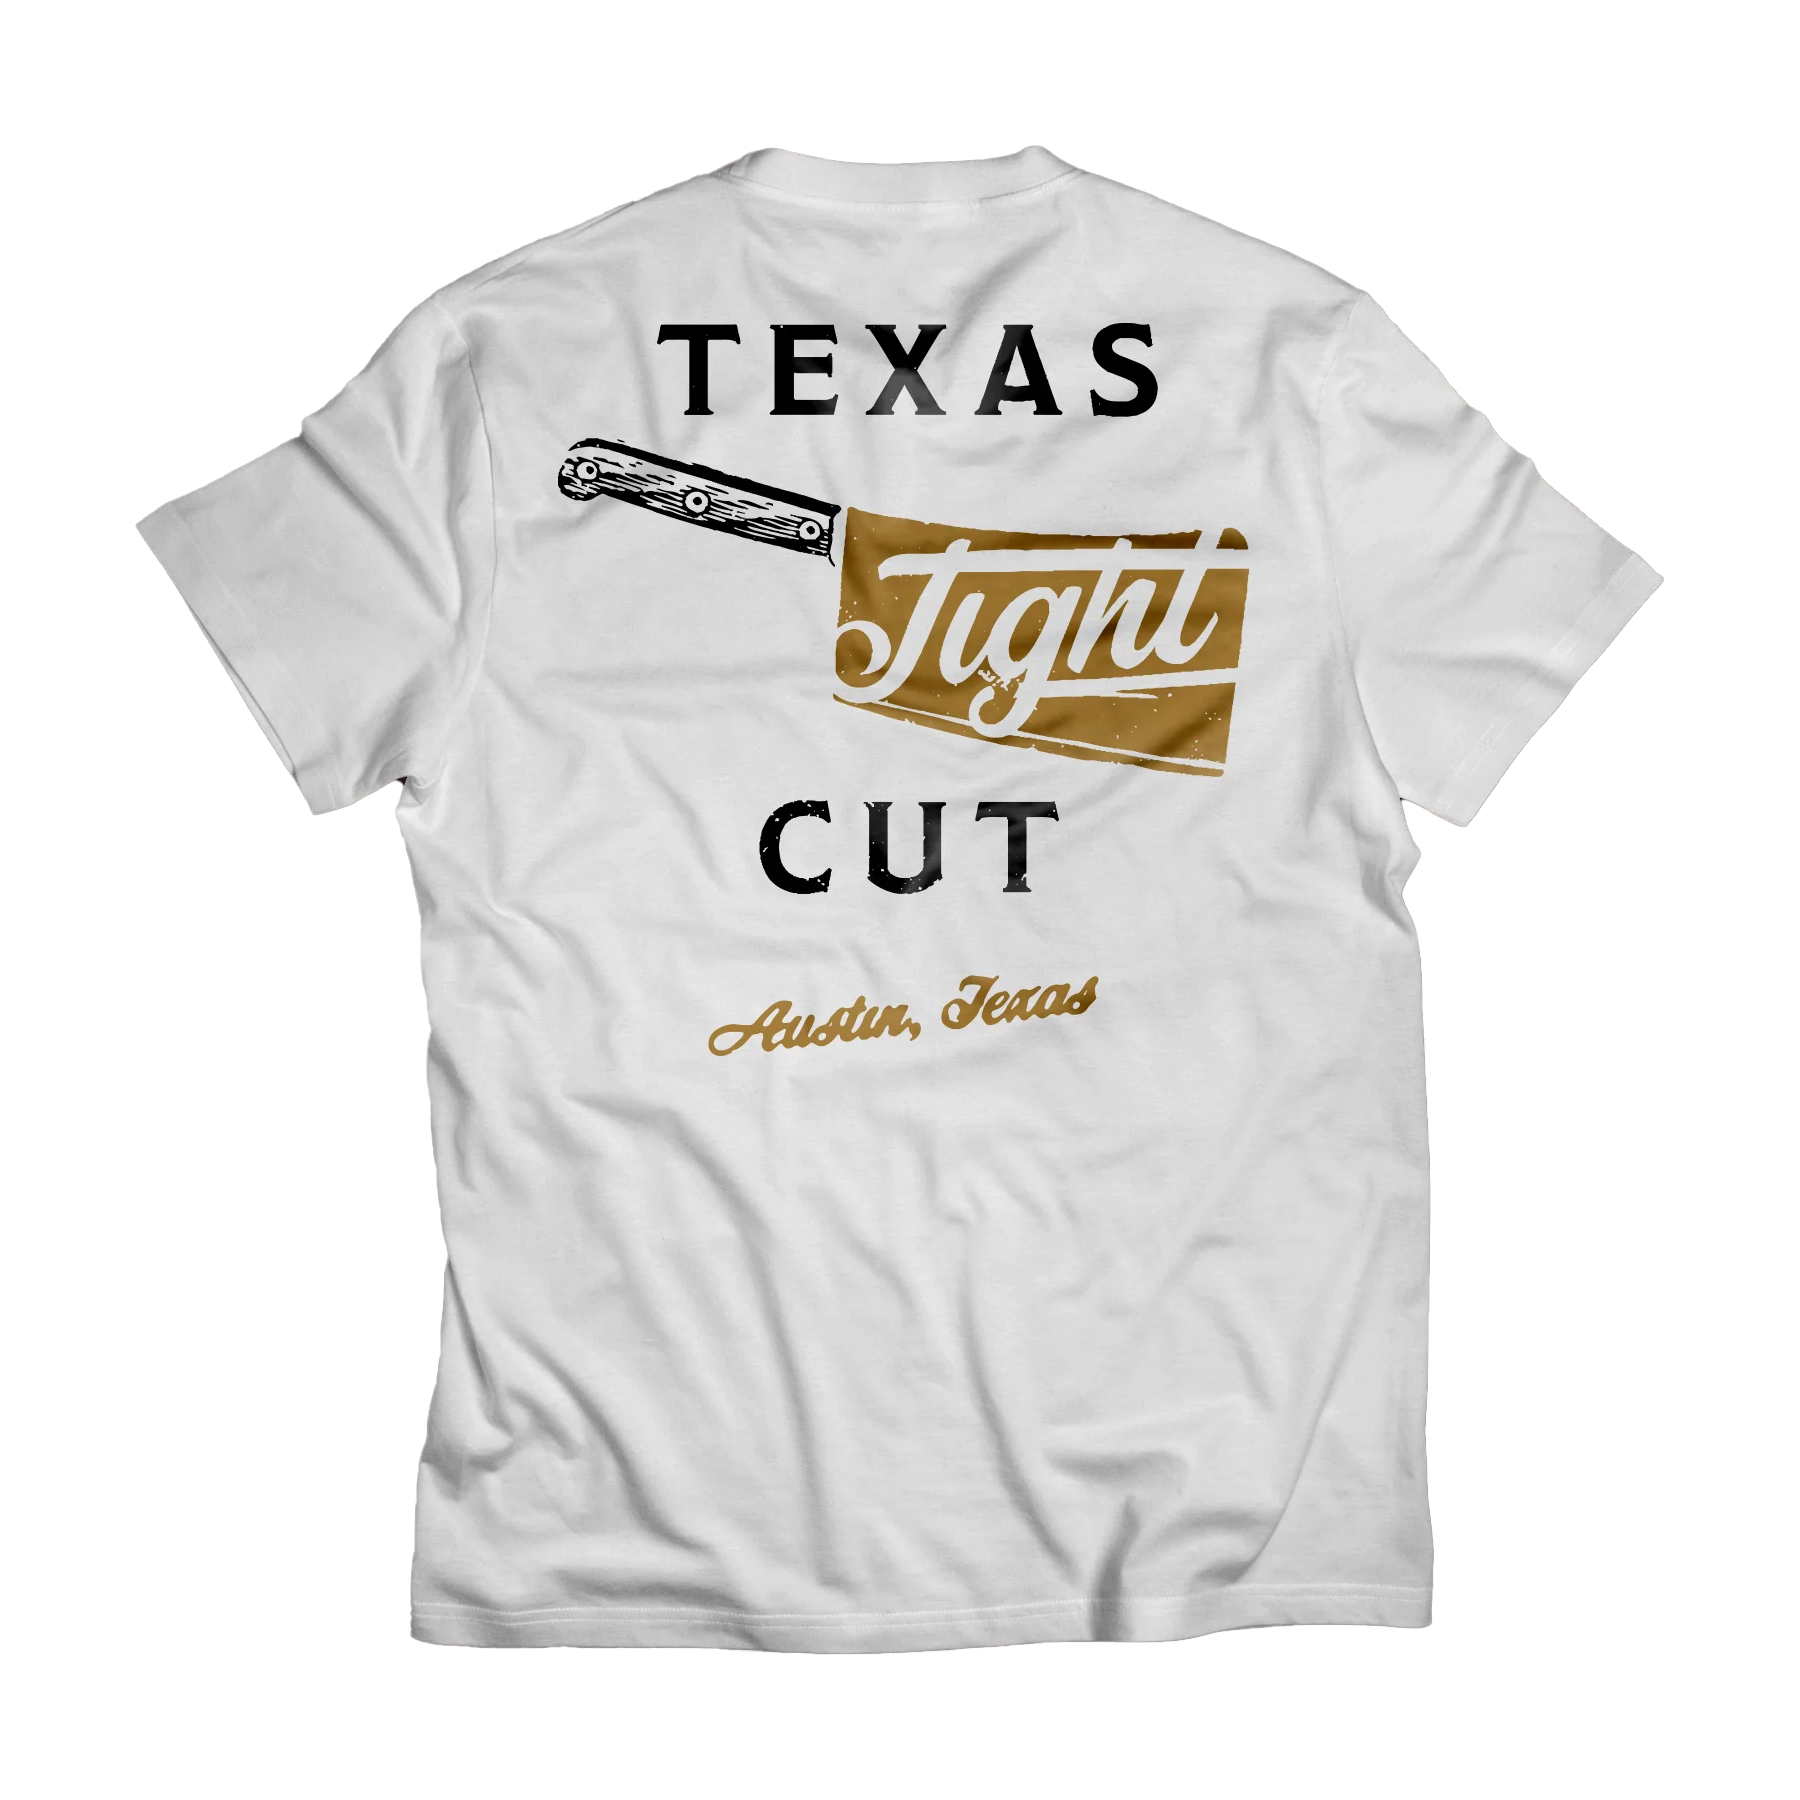 Texas Tight Cut White Tee